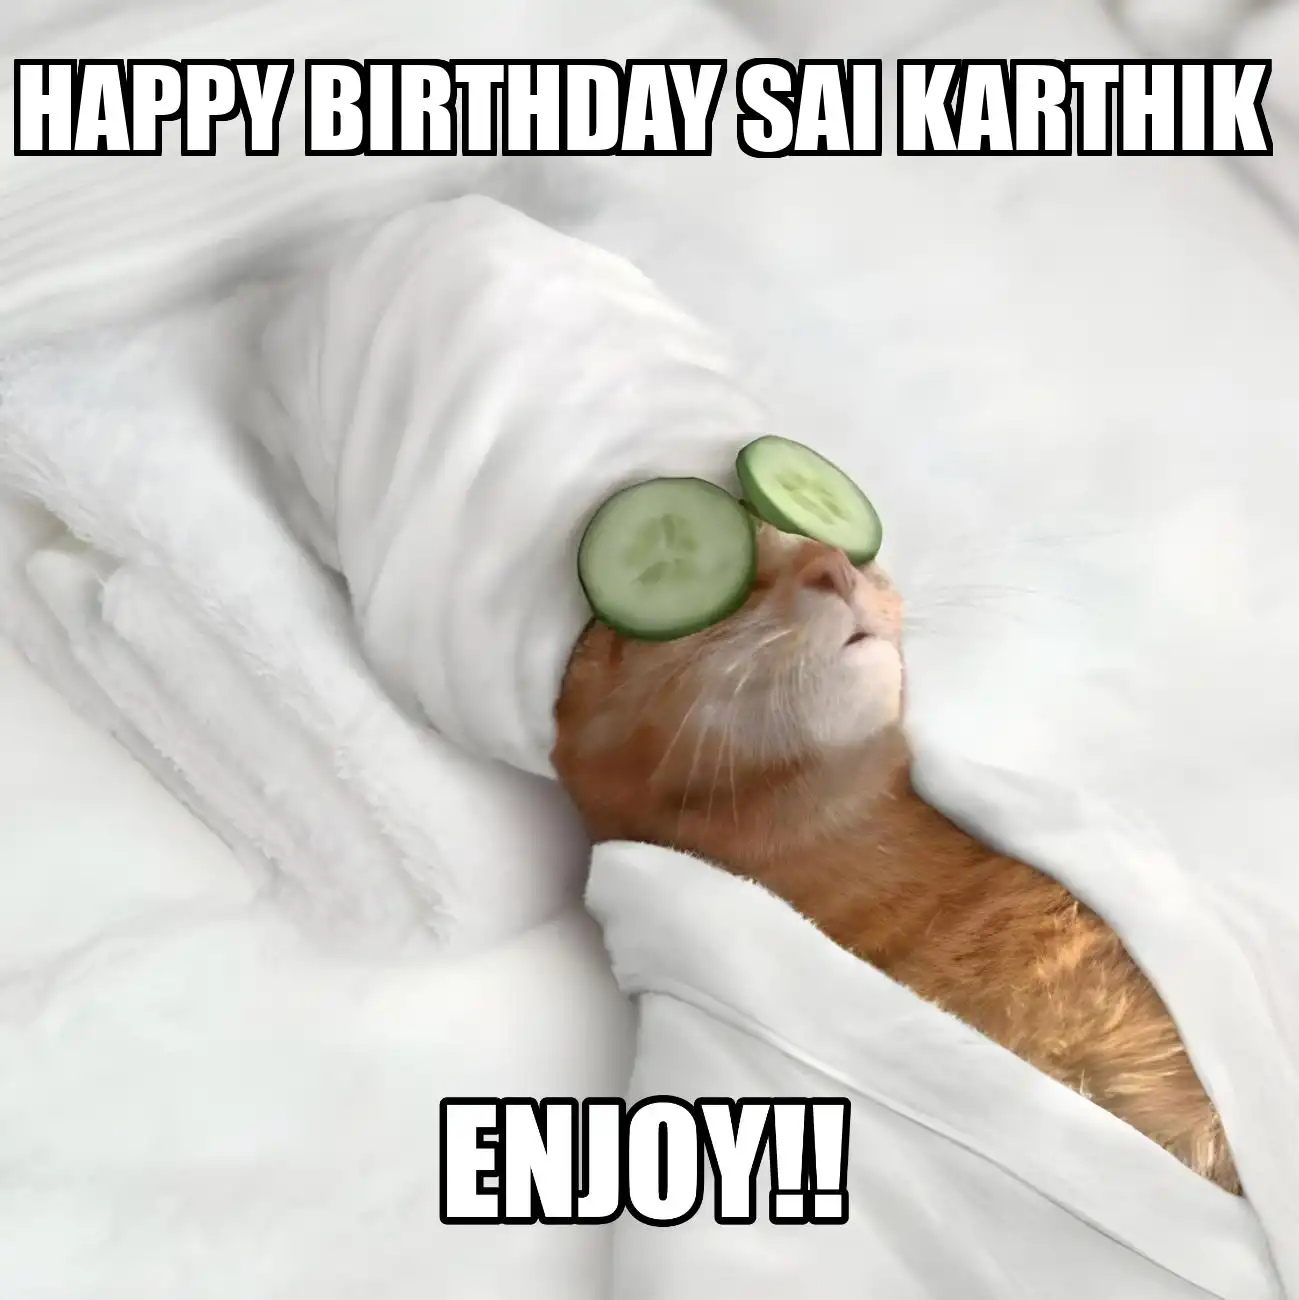 Happy Birthday Sai Karthik Enjoy Cat Meme